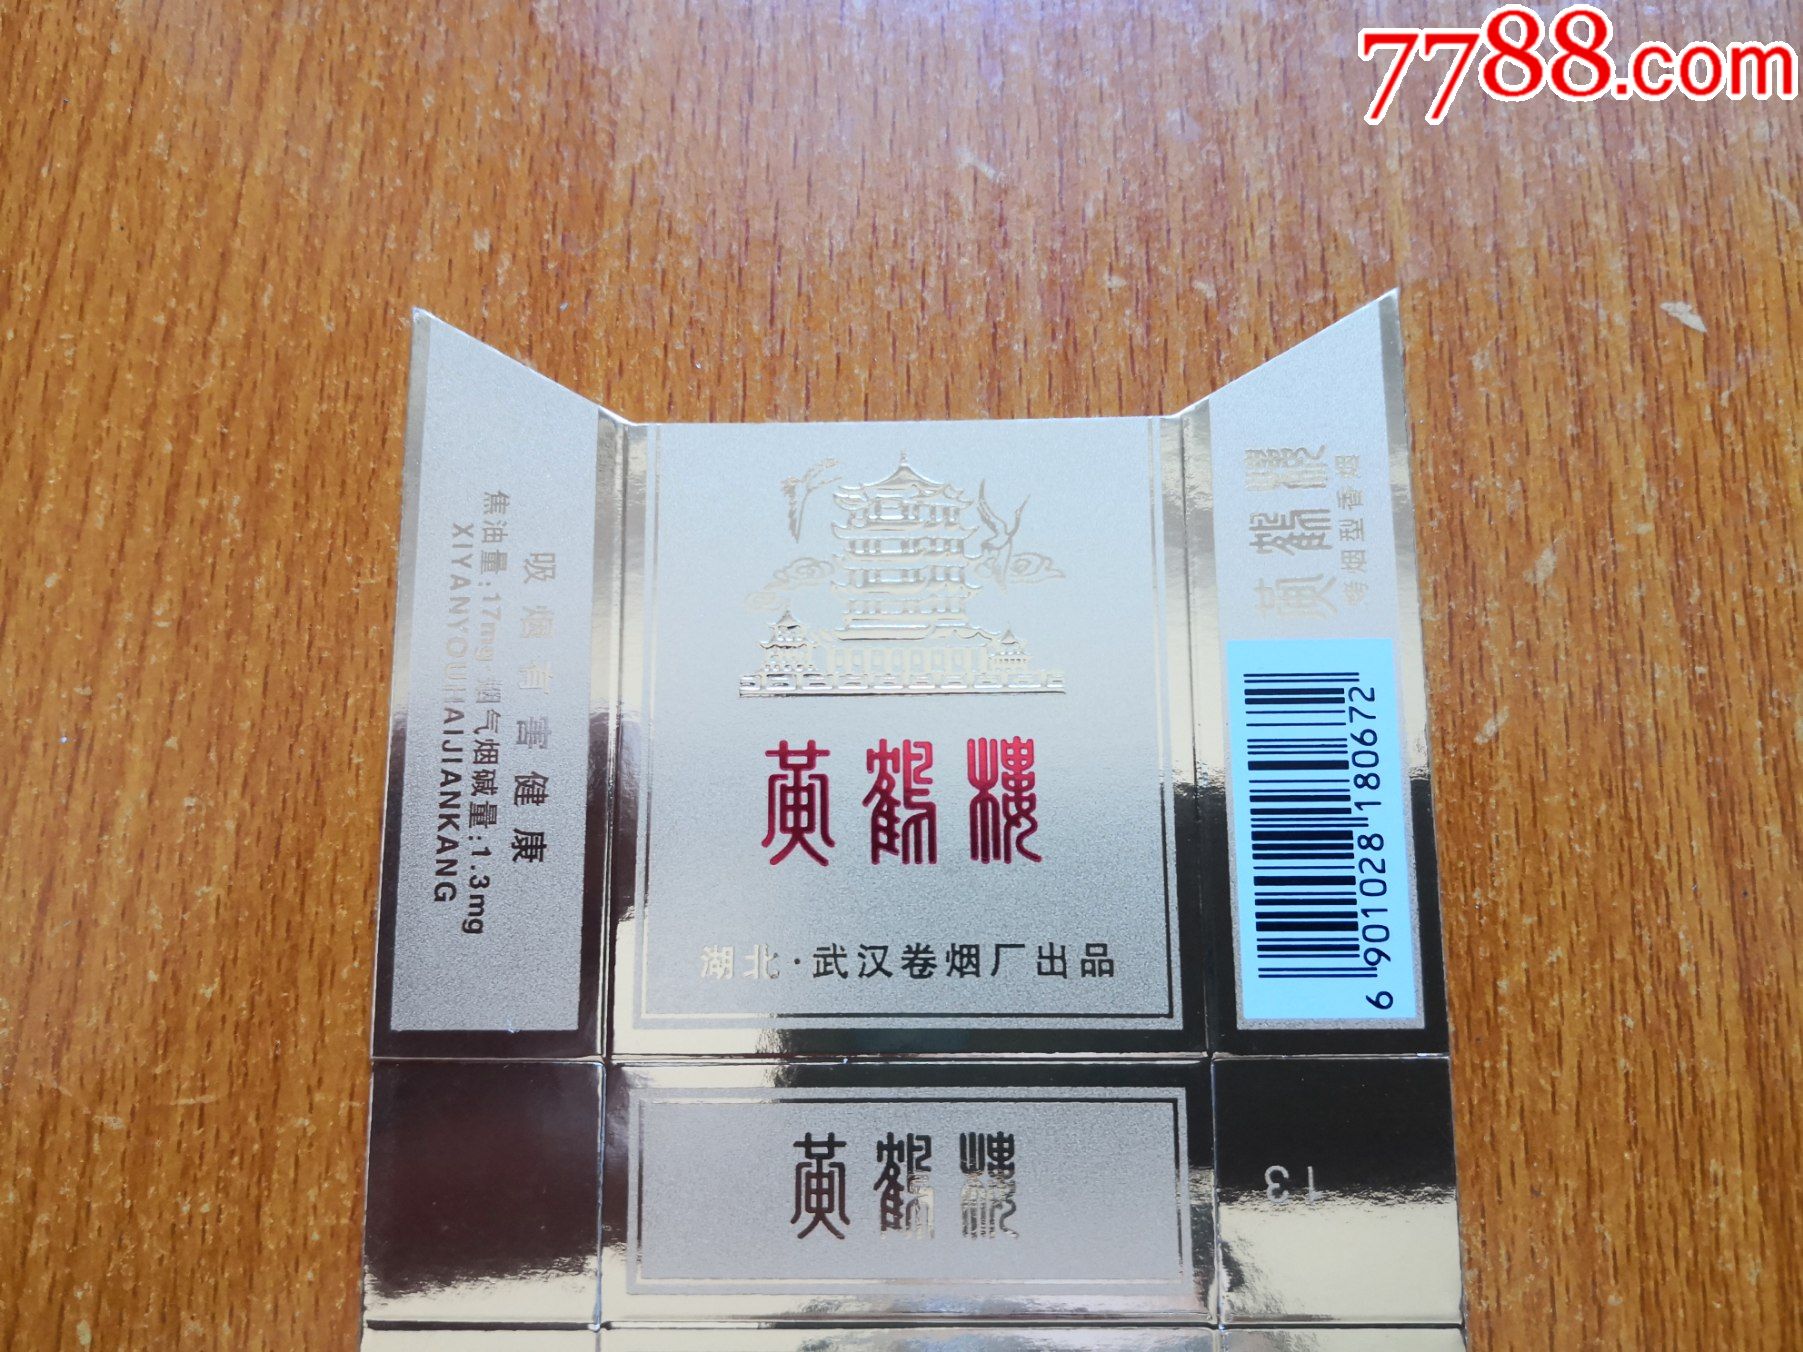 武汉厂【黄鹤楼】焦油17mg,条码底部白色,烤烟型香烟